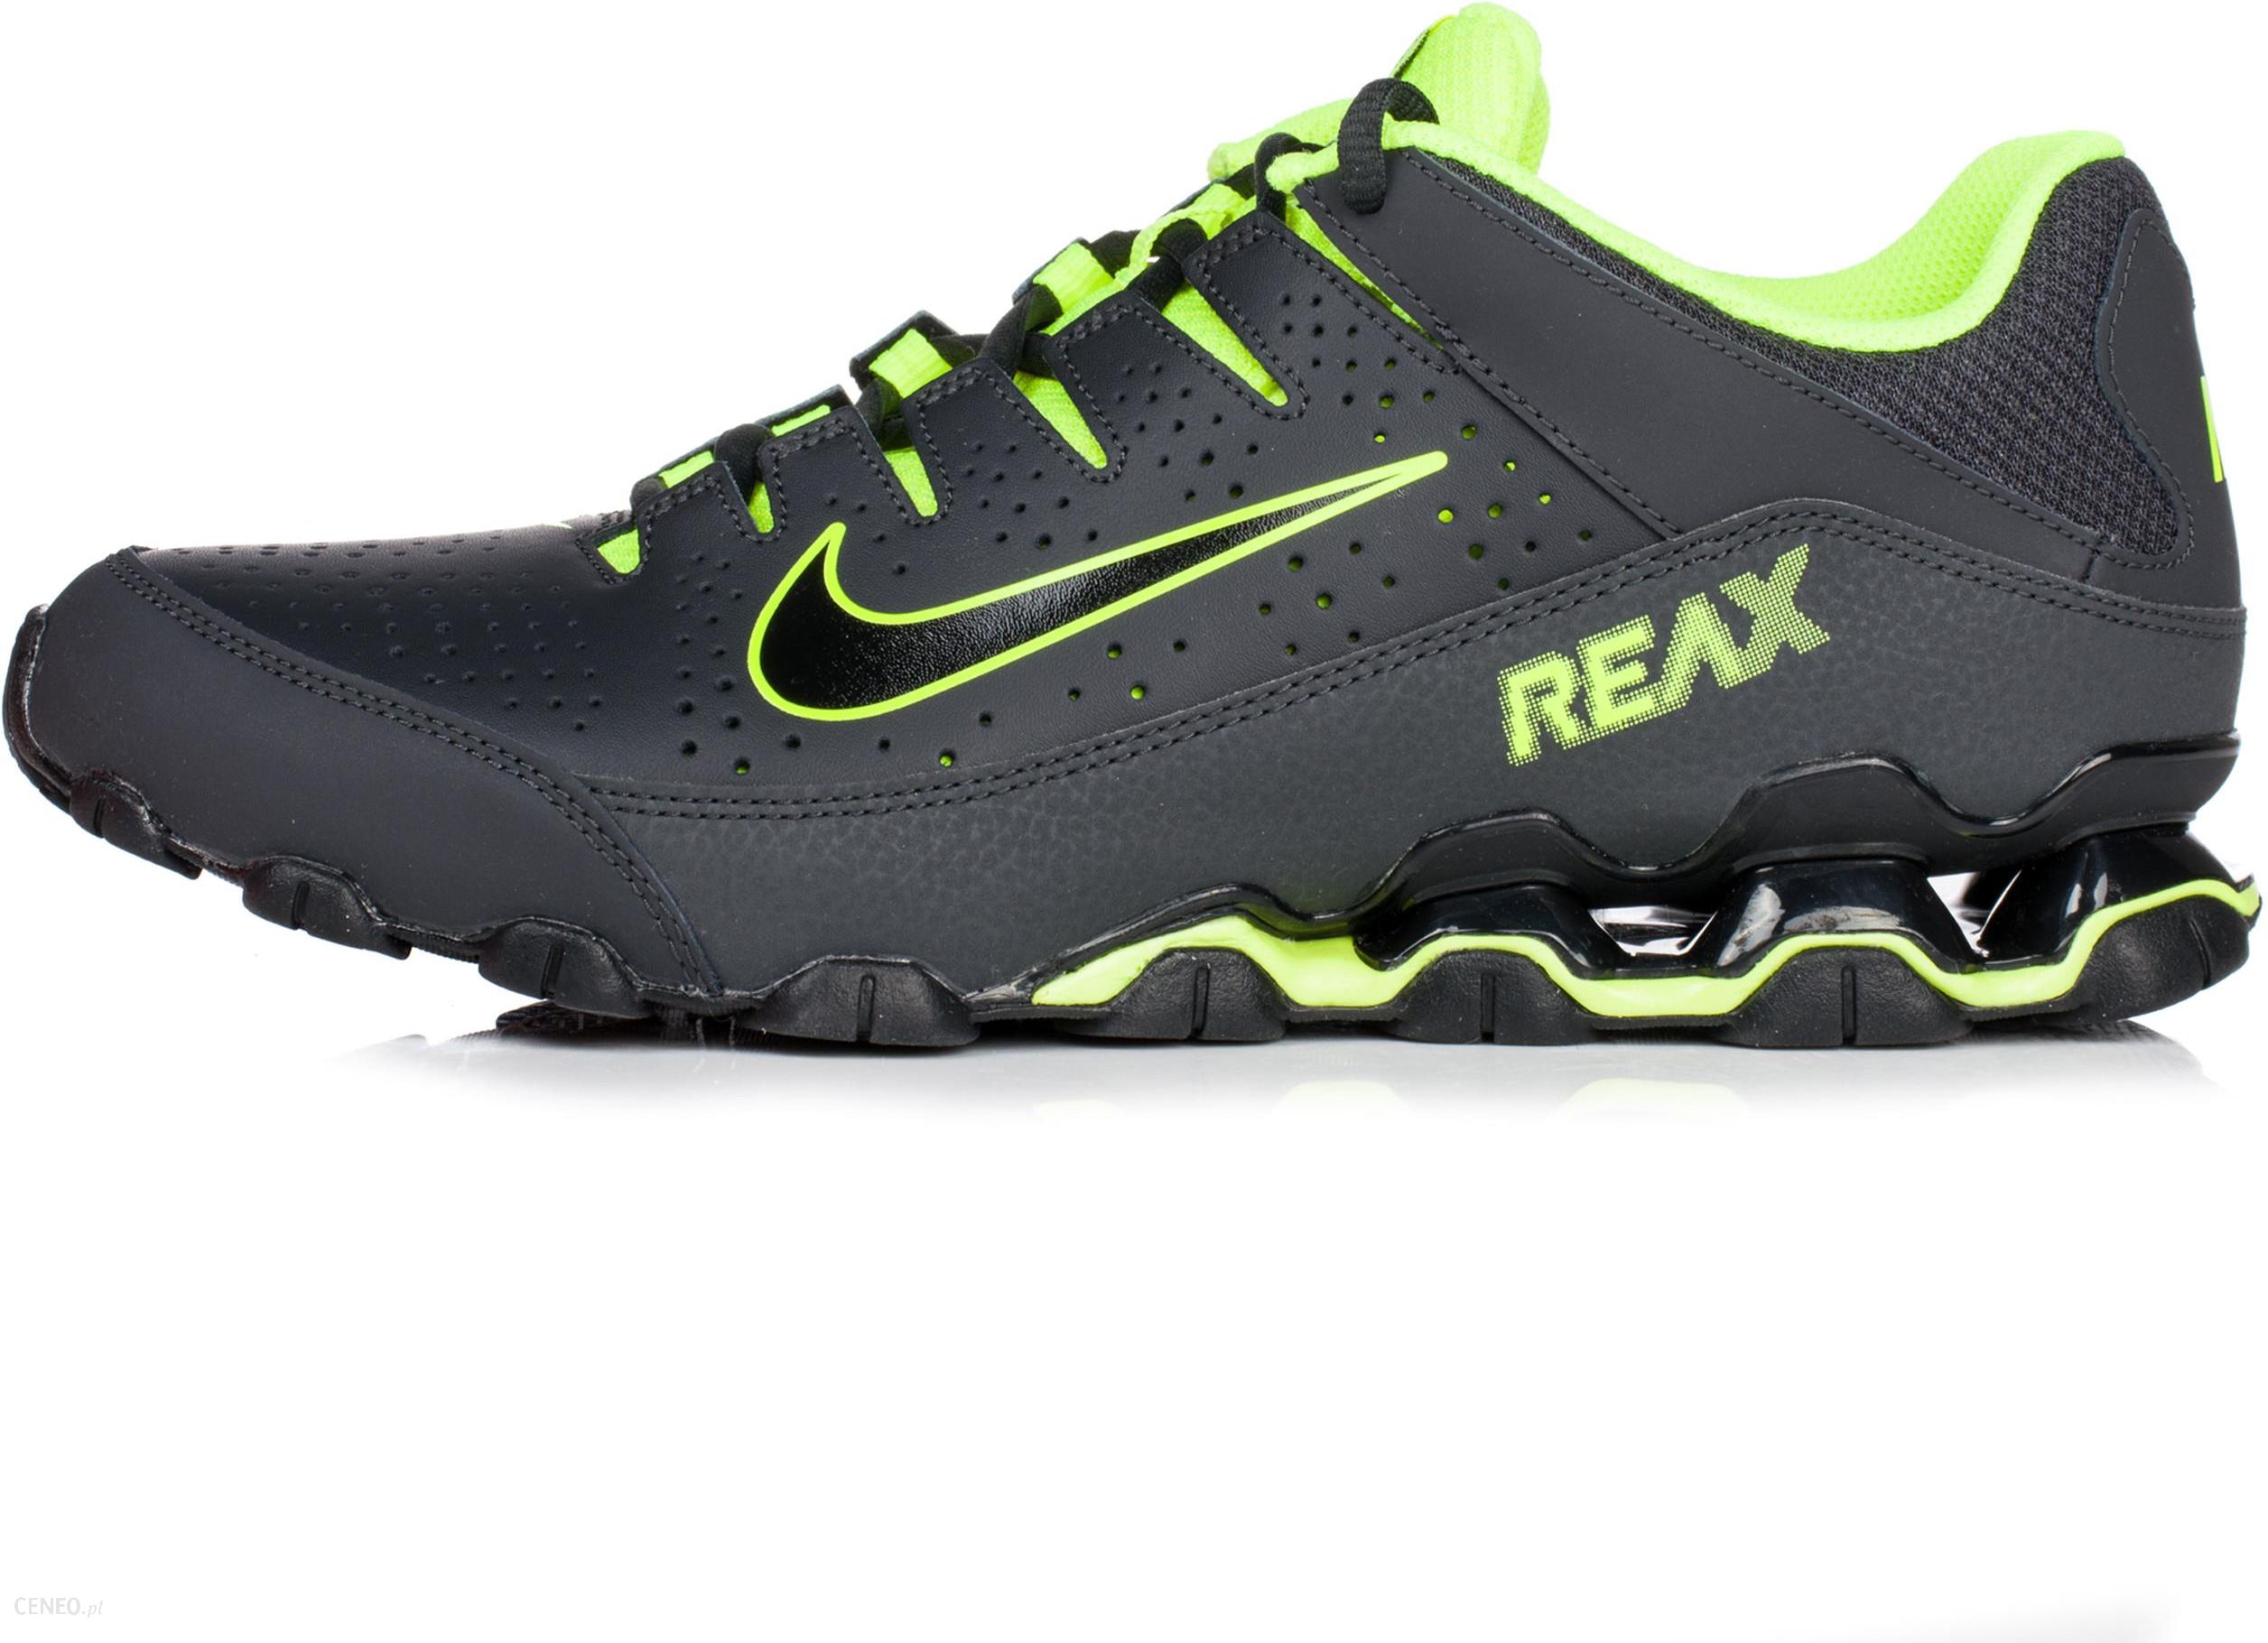 verteren Maakte zich klaar Guinness Buty męskie Nike Reax czarne 616272-036 - Ceny i opinie - Ceneo.pl